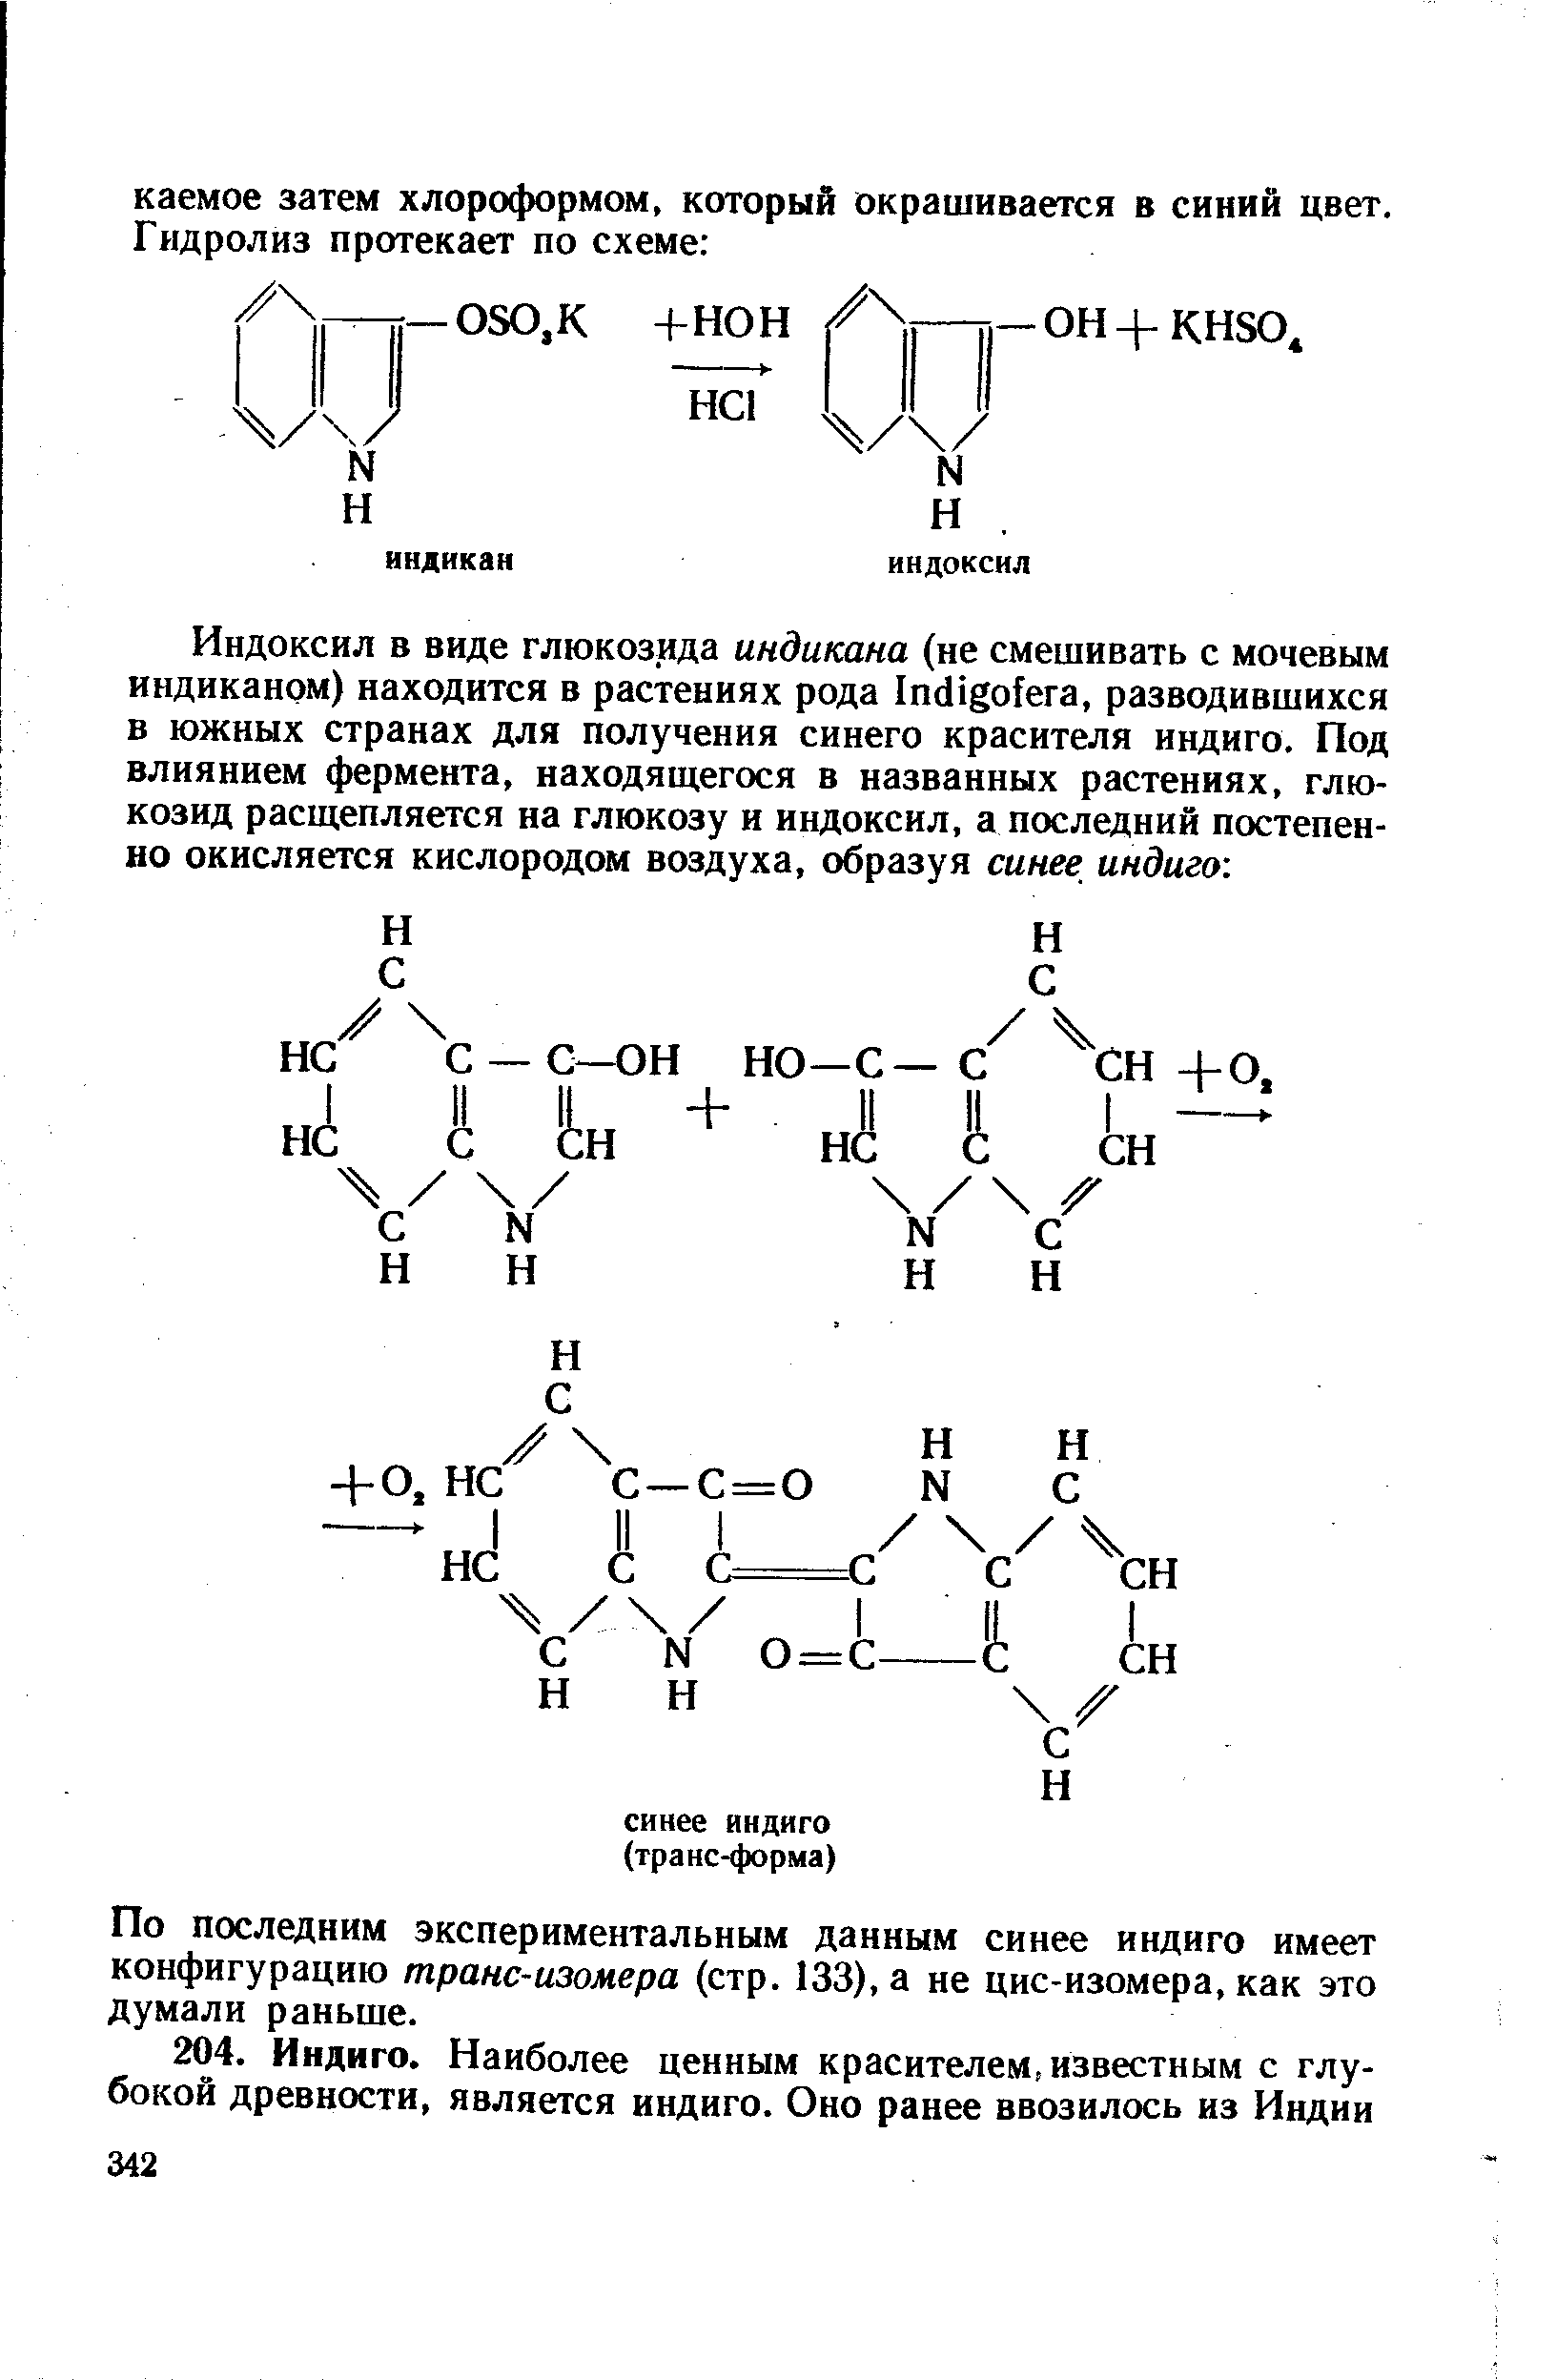 По последним экспериментальным данным синее индиго имеет конфигурацию транс-изомера (стр. 133), а не цис-изомера, как это думали раньше.